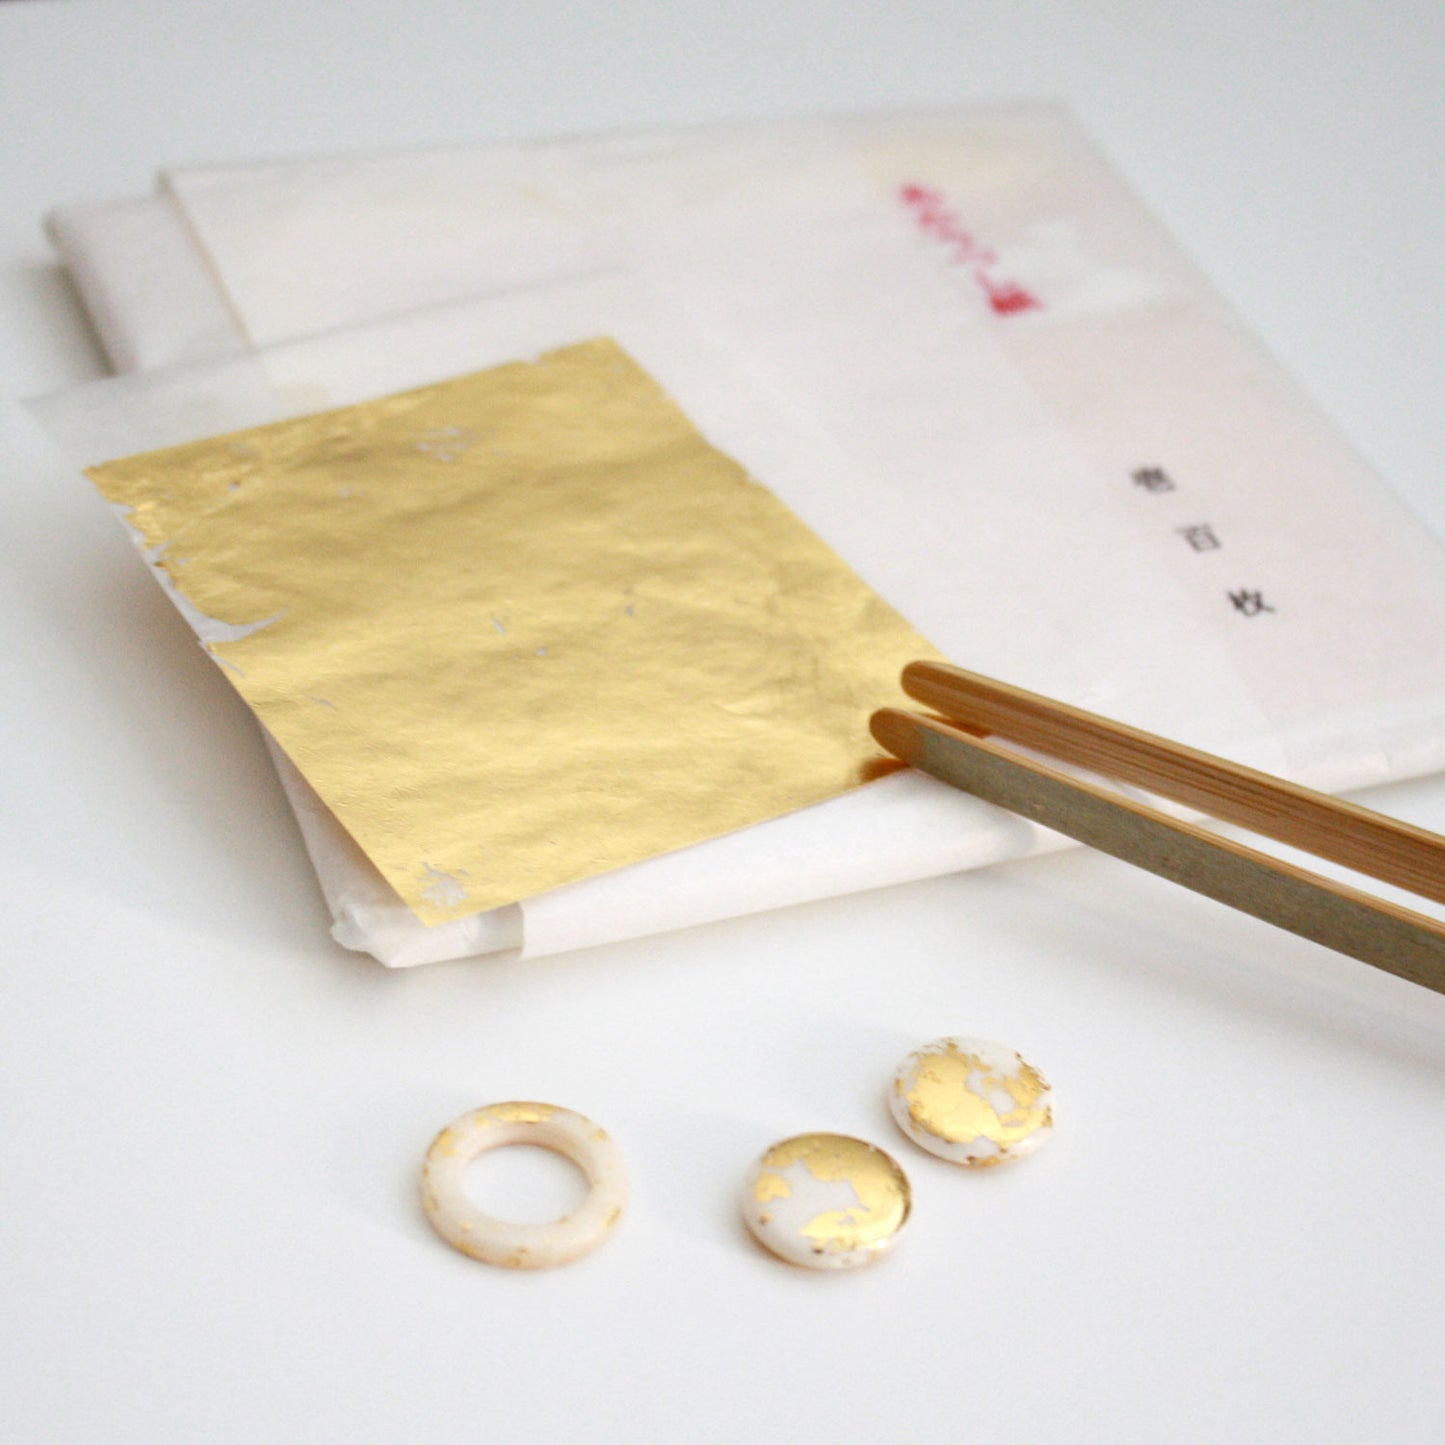 Gold Leaf Earrings - Ring & Tassel - Black